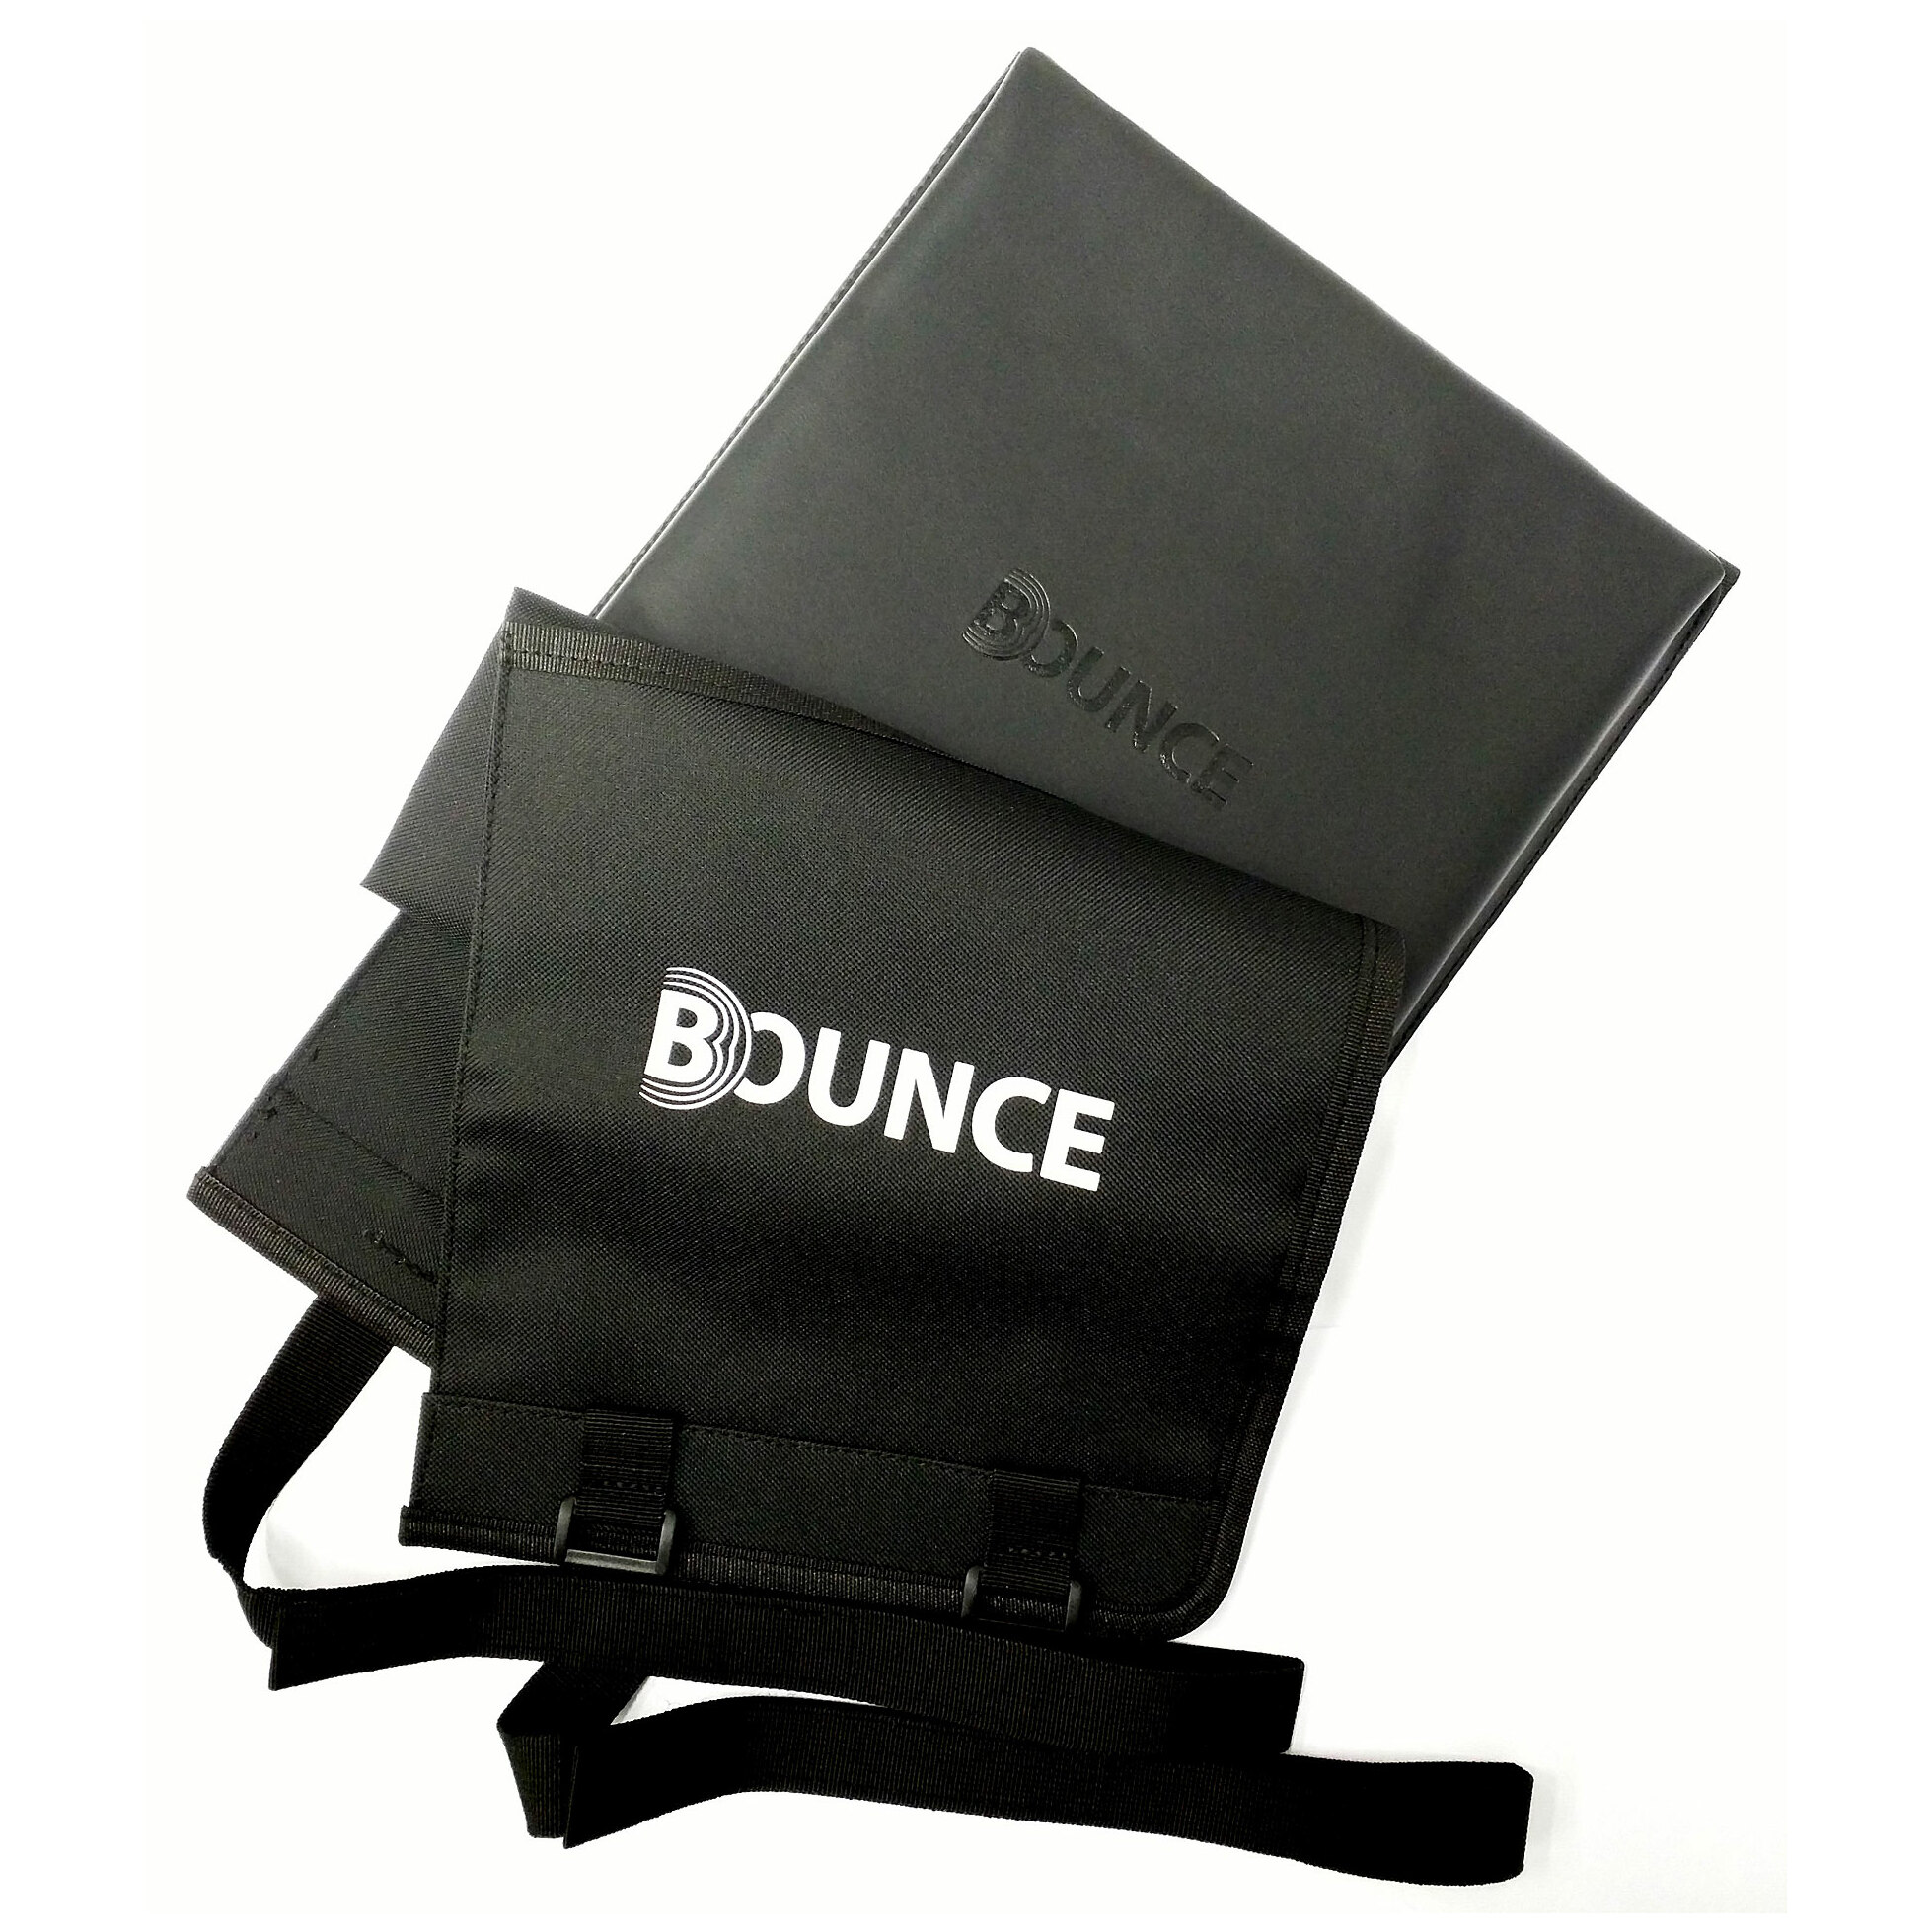 Bounce Cajon Pad - Premium